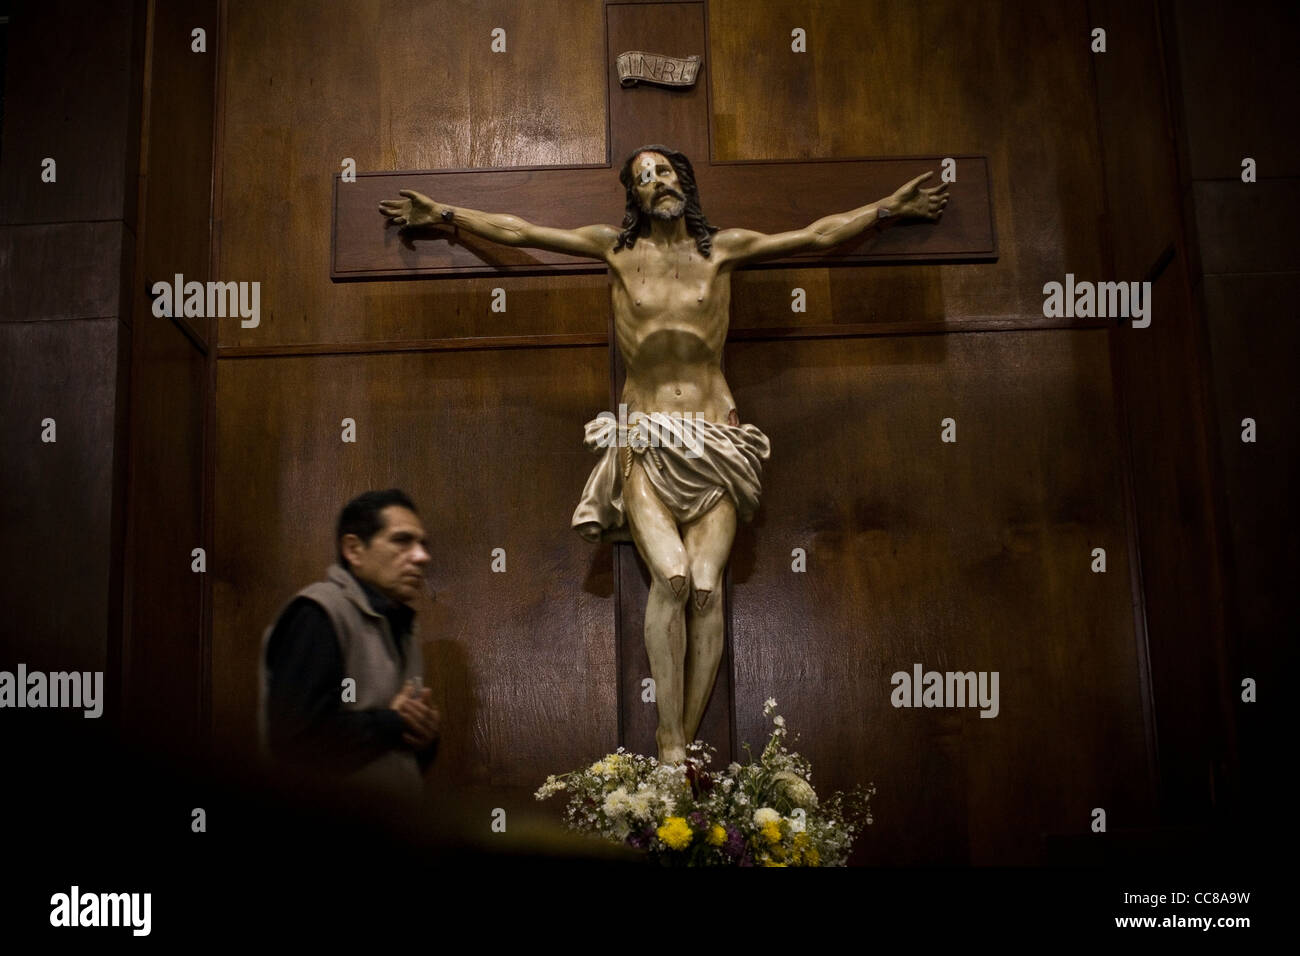 Un paroissien assiste à la messe dans une cathédrale de Lima, Pérou, Amérique du Sud. Banque D'Images